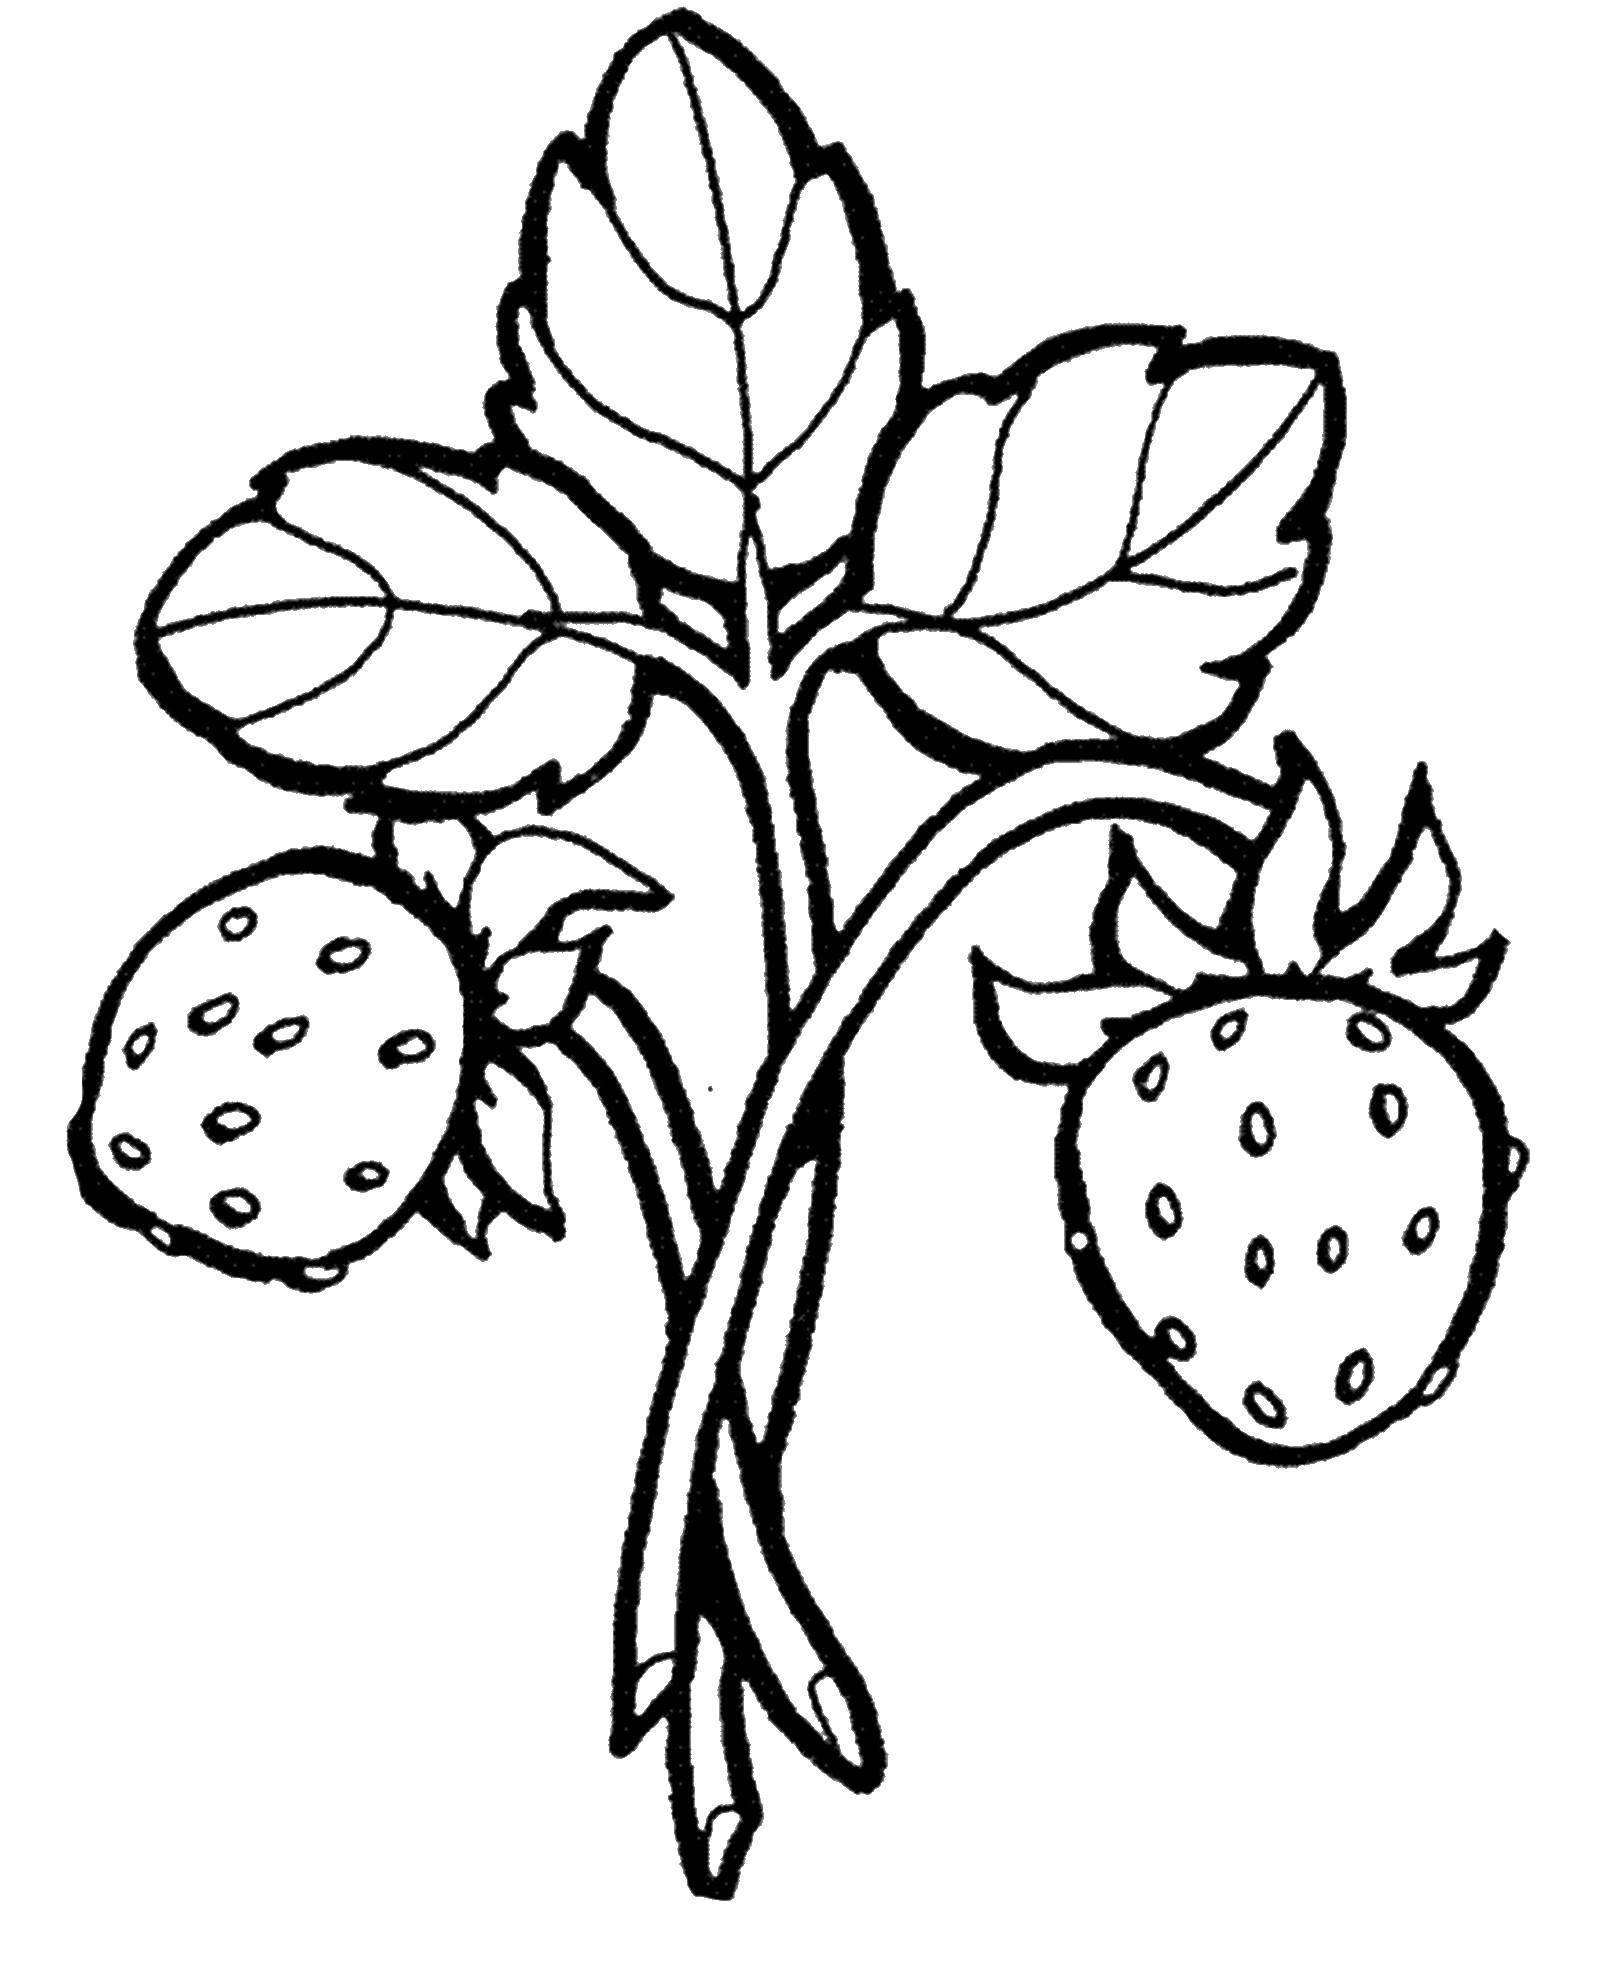 Название: Раскраска Земляничка. Категория: ягоды. Теги: Ягоды, земляника.